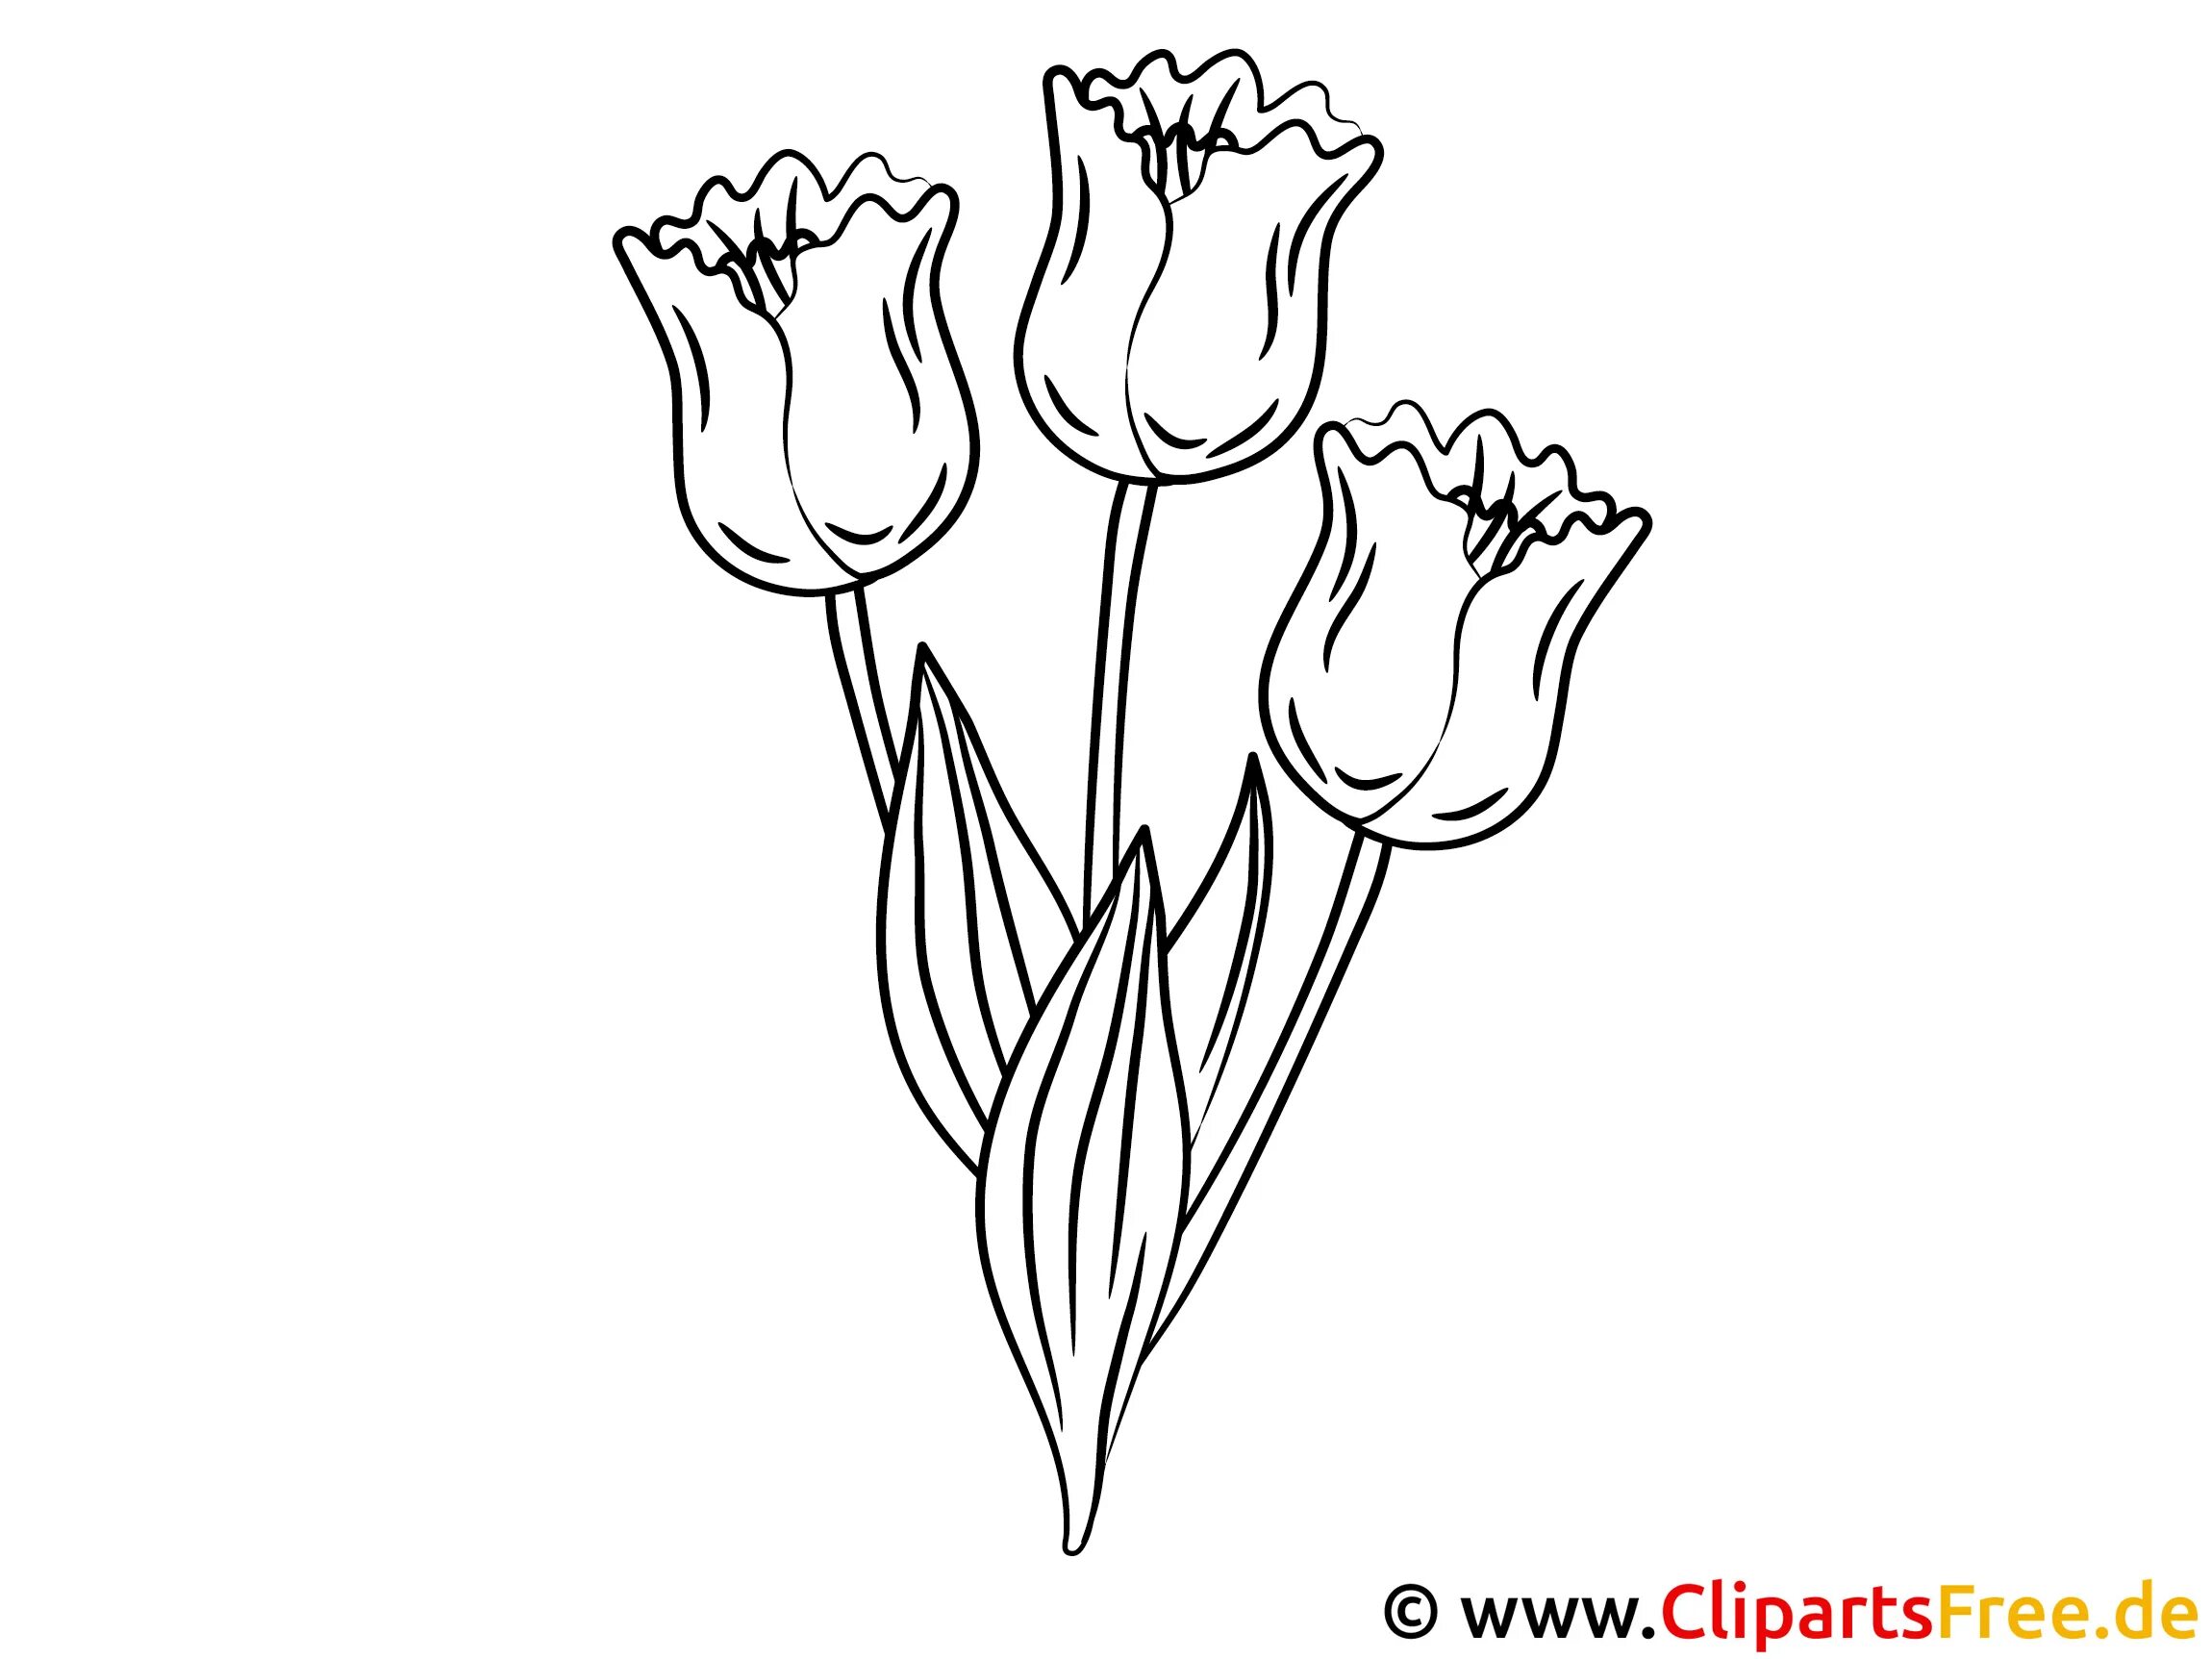 Раскраска радостные тюльпаны для детей 5-6 лет